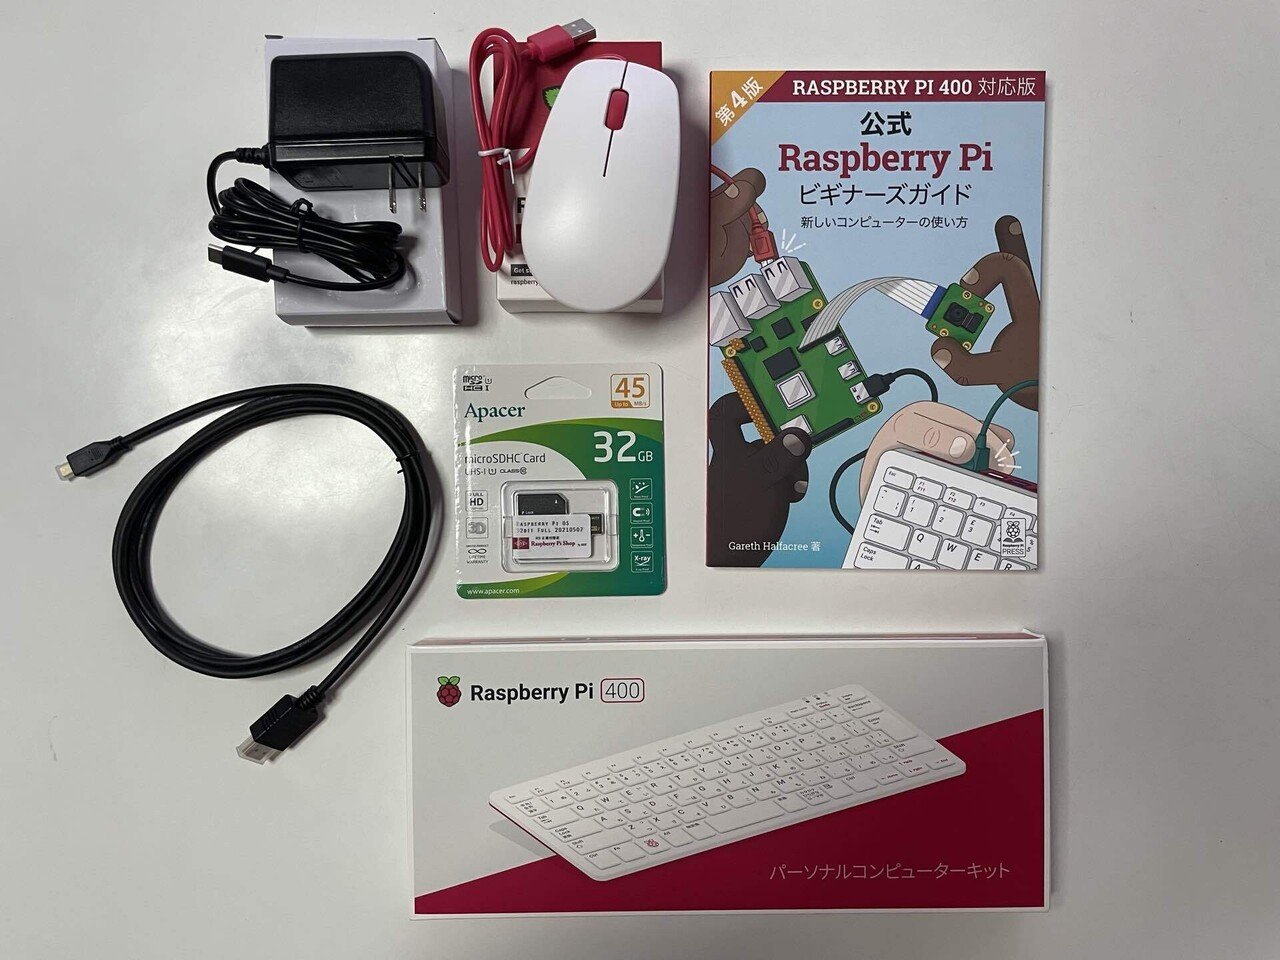 きたぞ「Raspberry Pi 400 日本版（日本語配列のキーボードを採用した